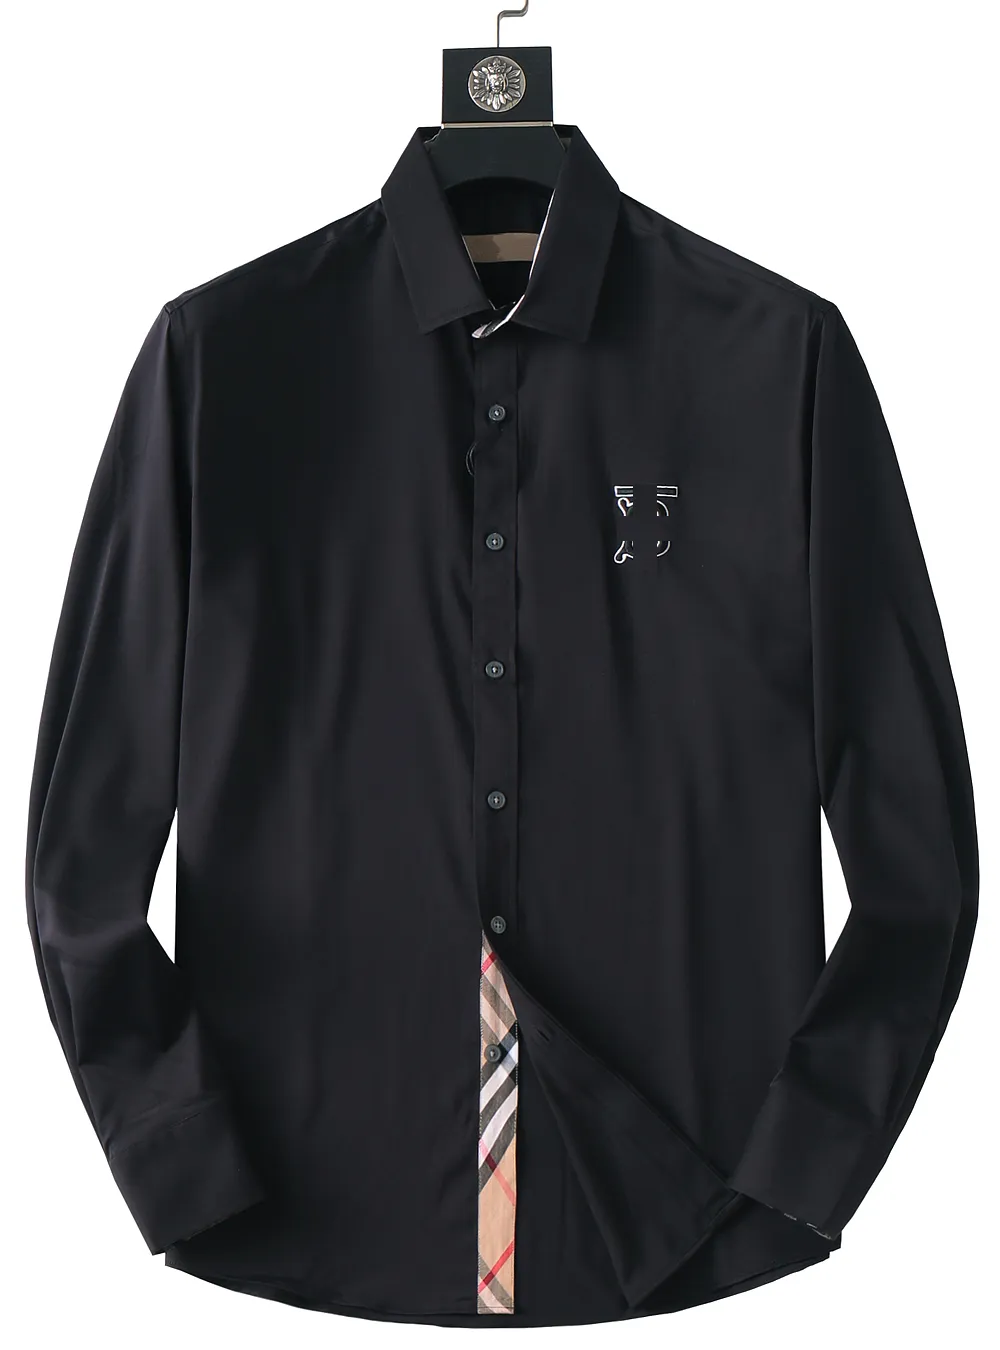 Дизайнерская мужская классическая рубашка Деловая мода повседневная классическая рубашка с рукавами и буквами брендовая мужская рубашка с надписью на груди Весенняя облегающая рубашка различных стилей брендовой одежды